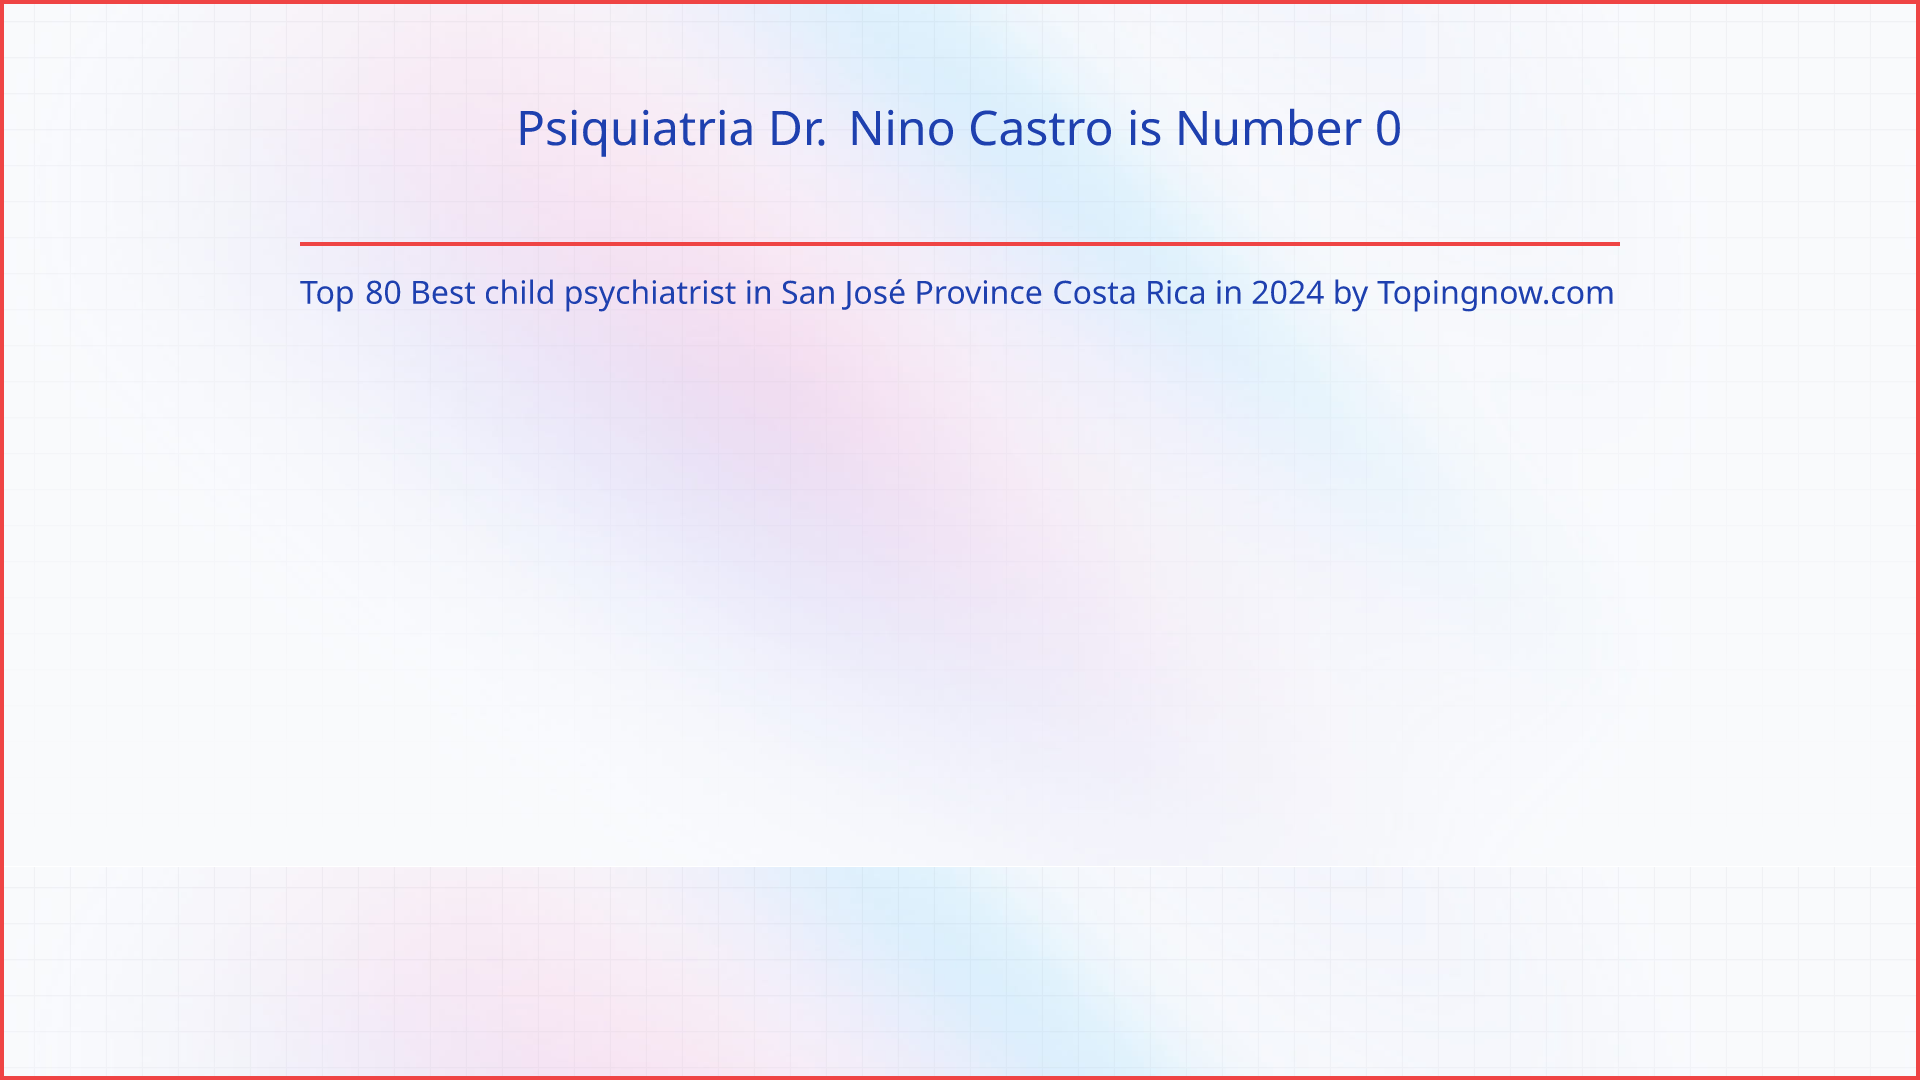 Psiquiatria Dr. Nino Castro: Top 80 Best child psychiatrist in San José Province Costa Rica in 2024